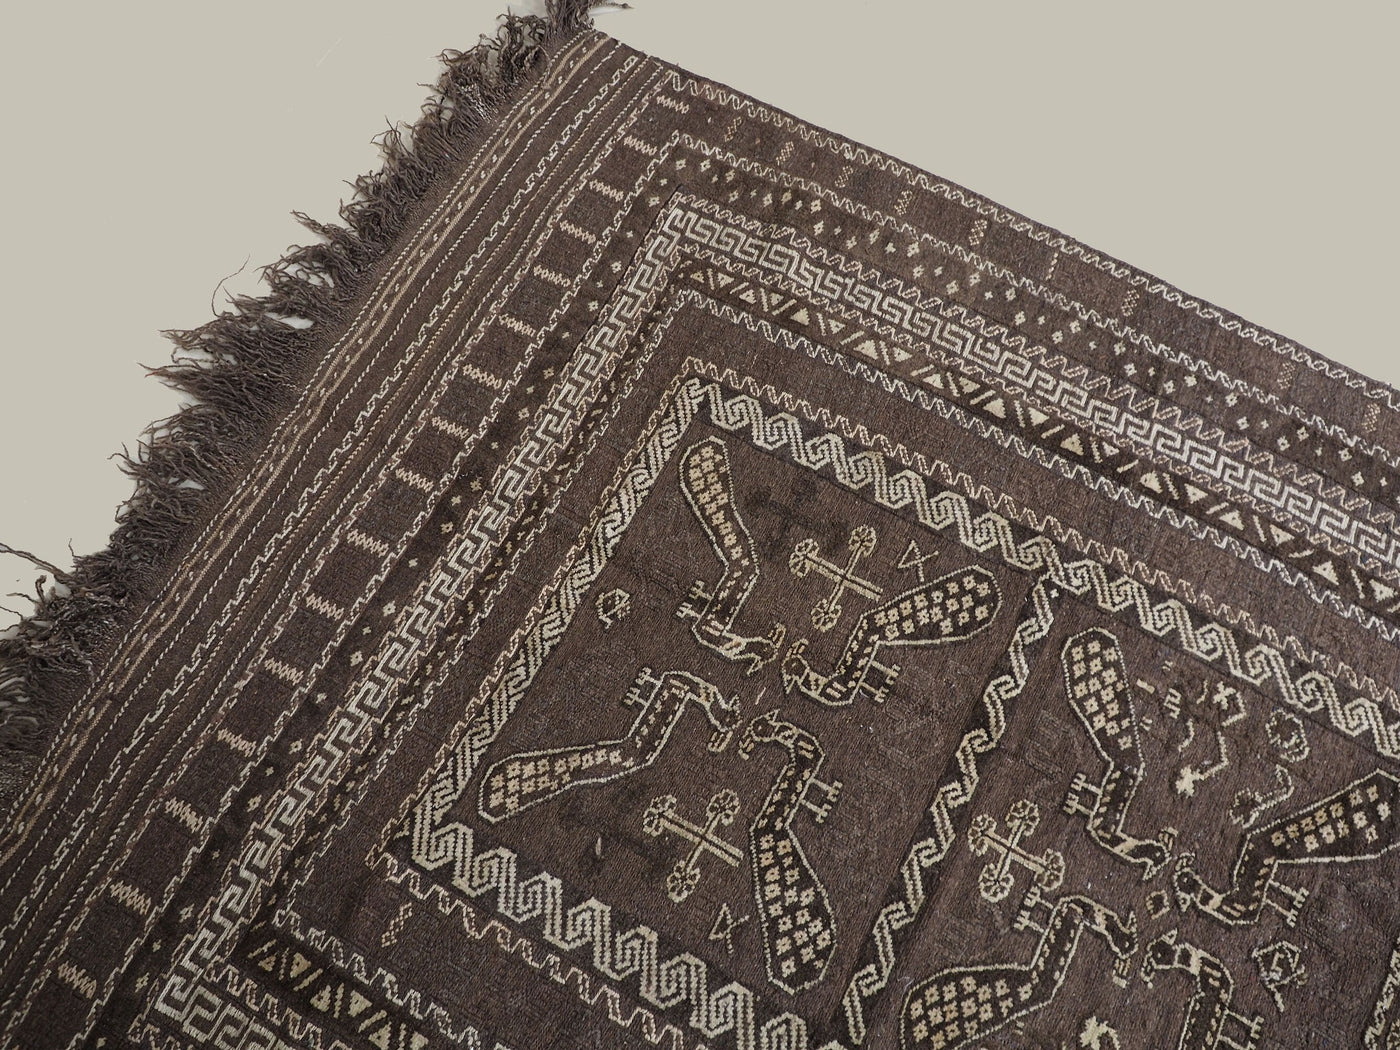 280x155 cm  orient handgewebte Teppich Nomaden belotsch sumakh kelim afghan Beloch kilim Provinzen Taimani Süd-Afghanistan Nr-TM-6  Orientsbazar   